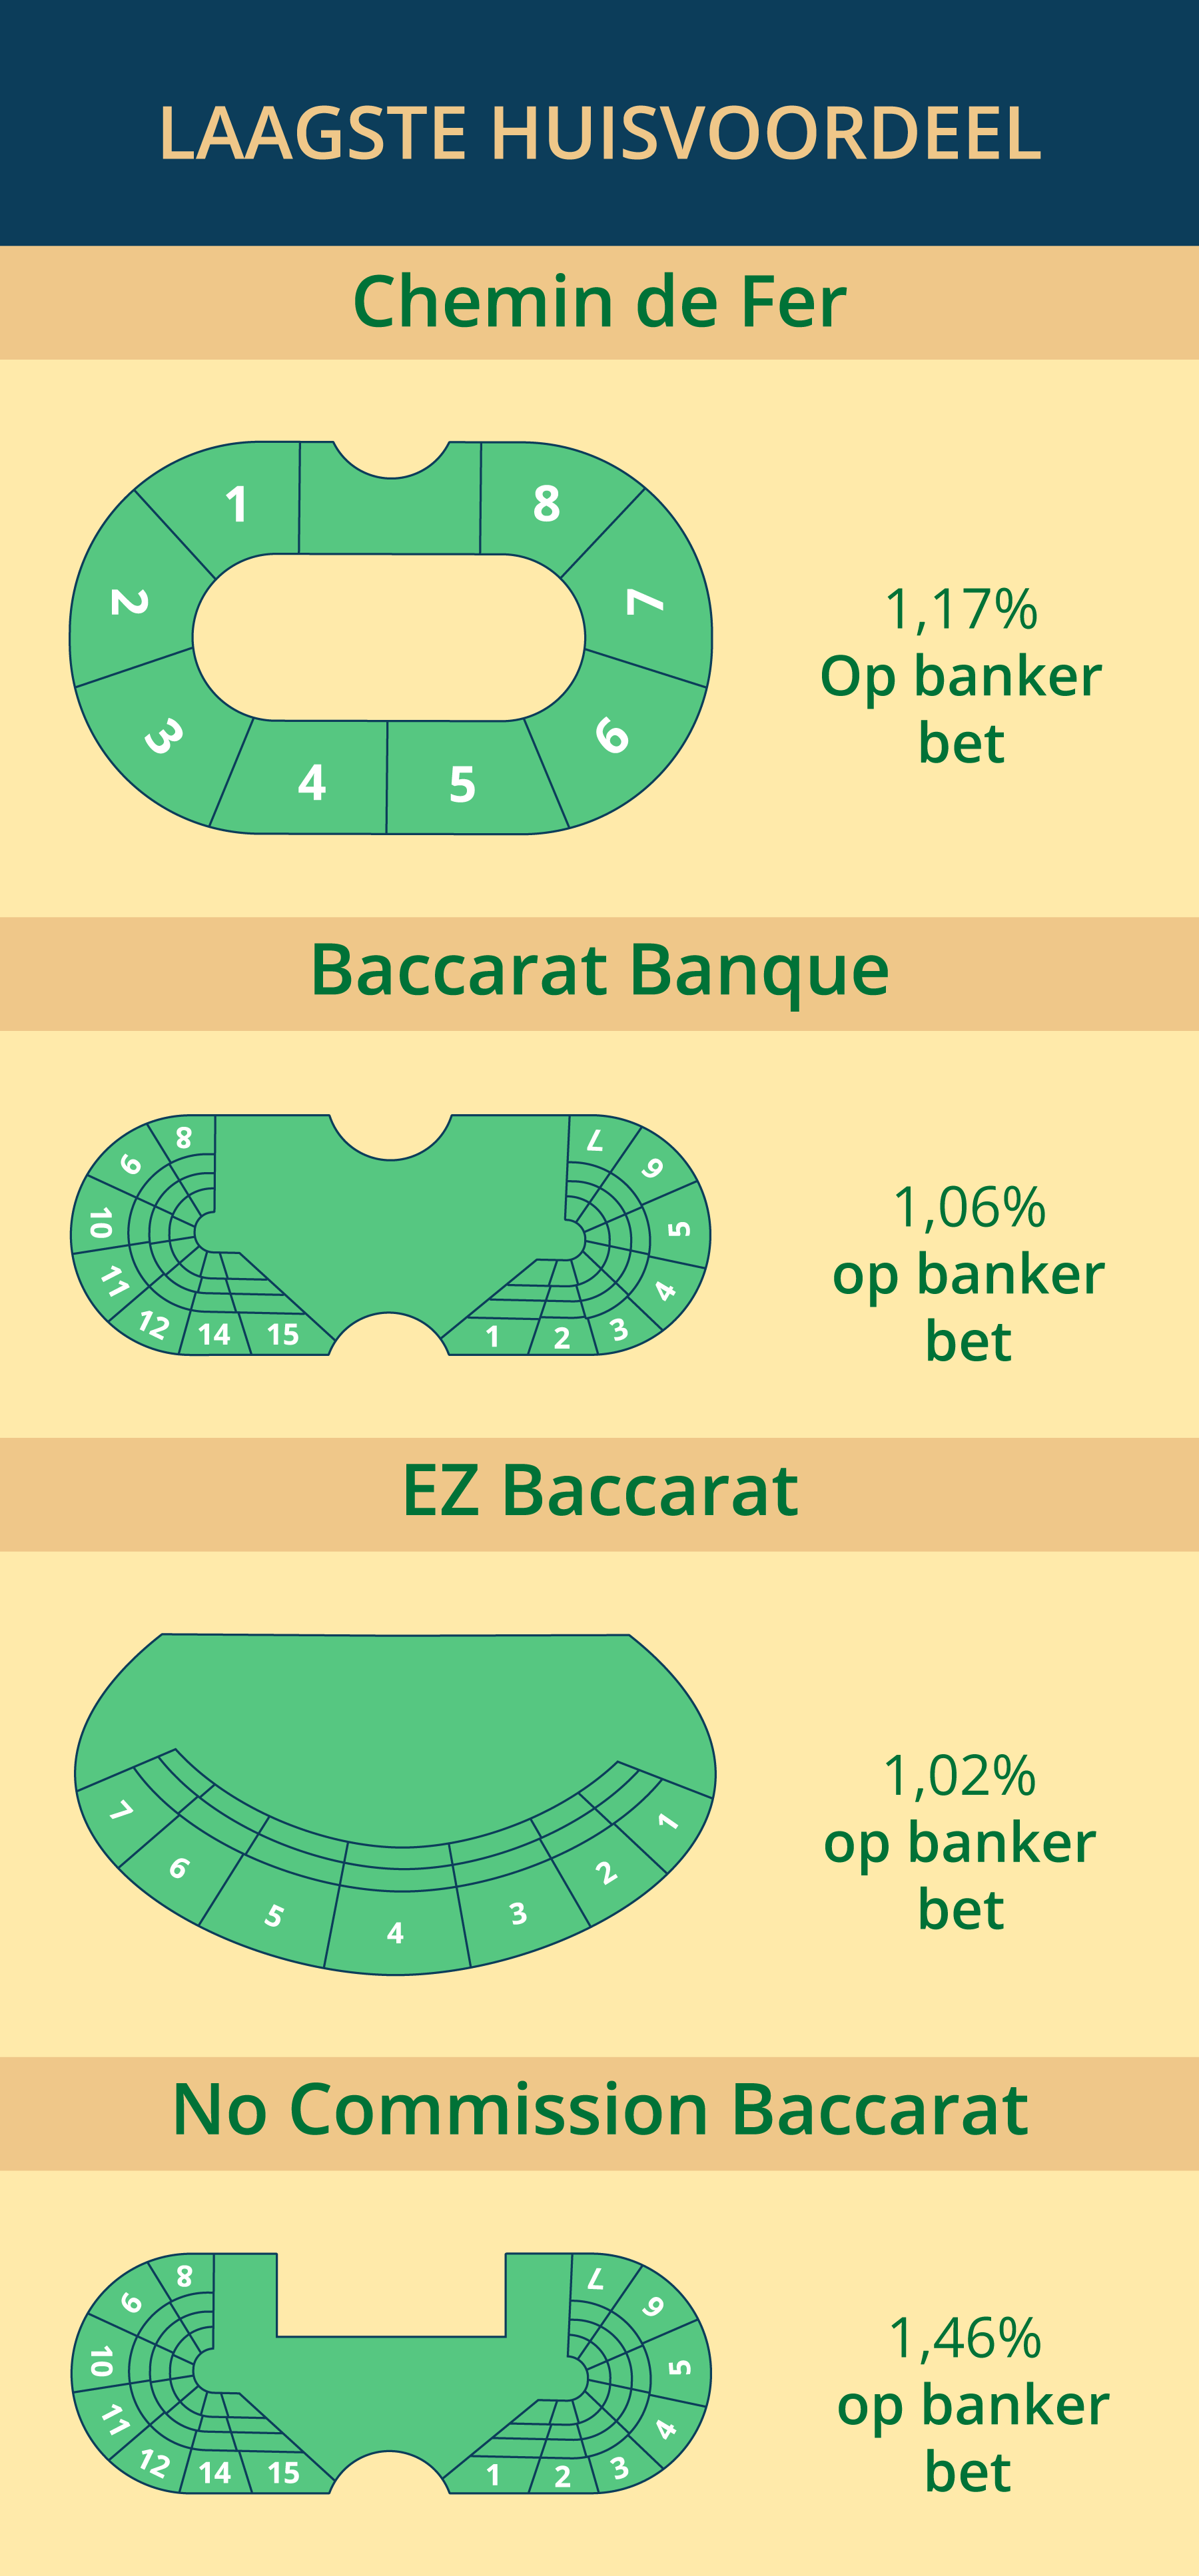 Baccarat varianten met het laagste huisvoordeel